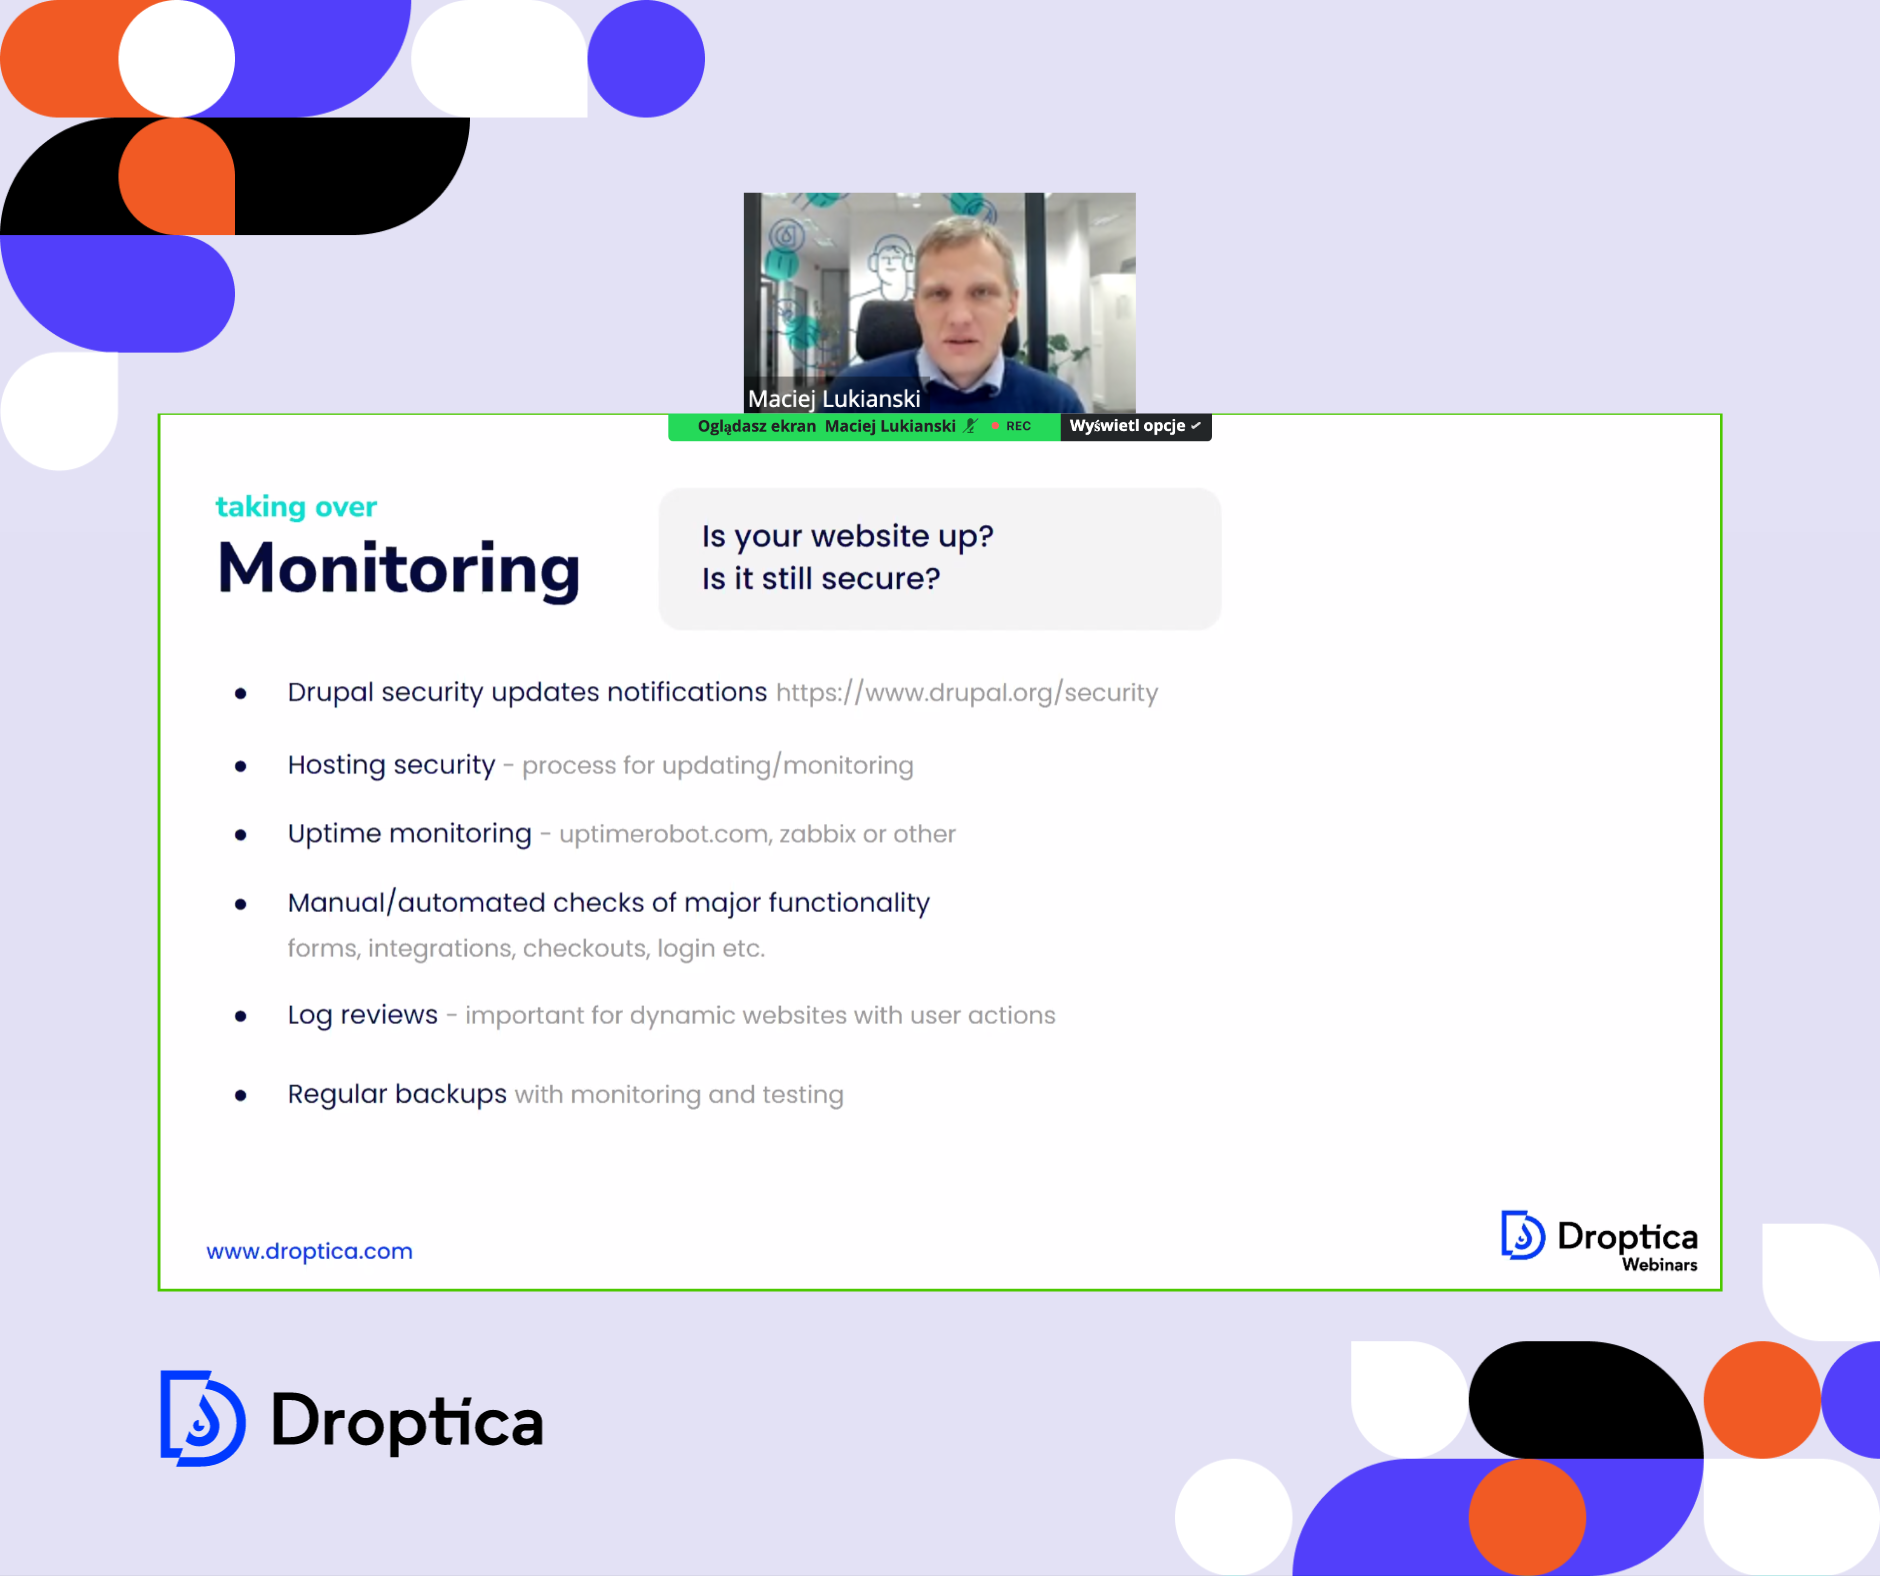 Droptica Webinars to webinary na temat wsparcia Drupala, które odbywały się cyklicznie w 2023 roku.